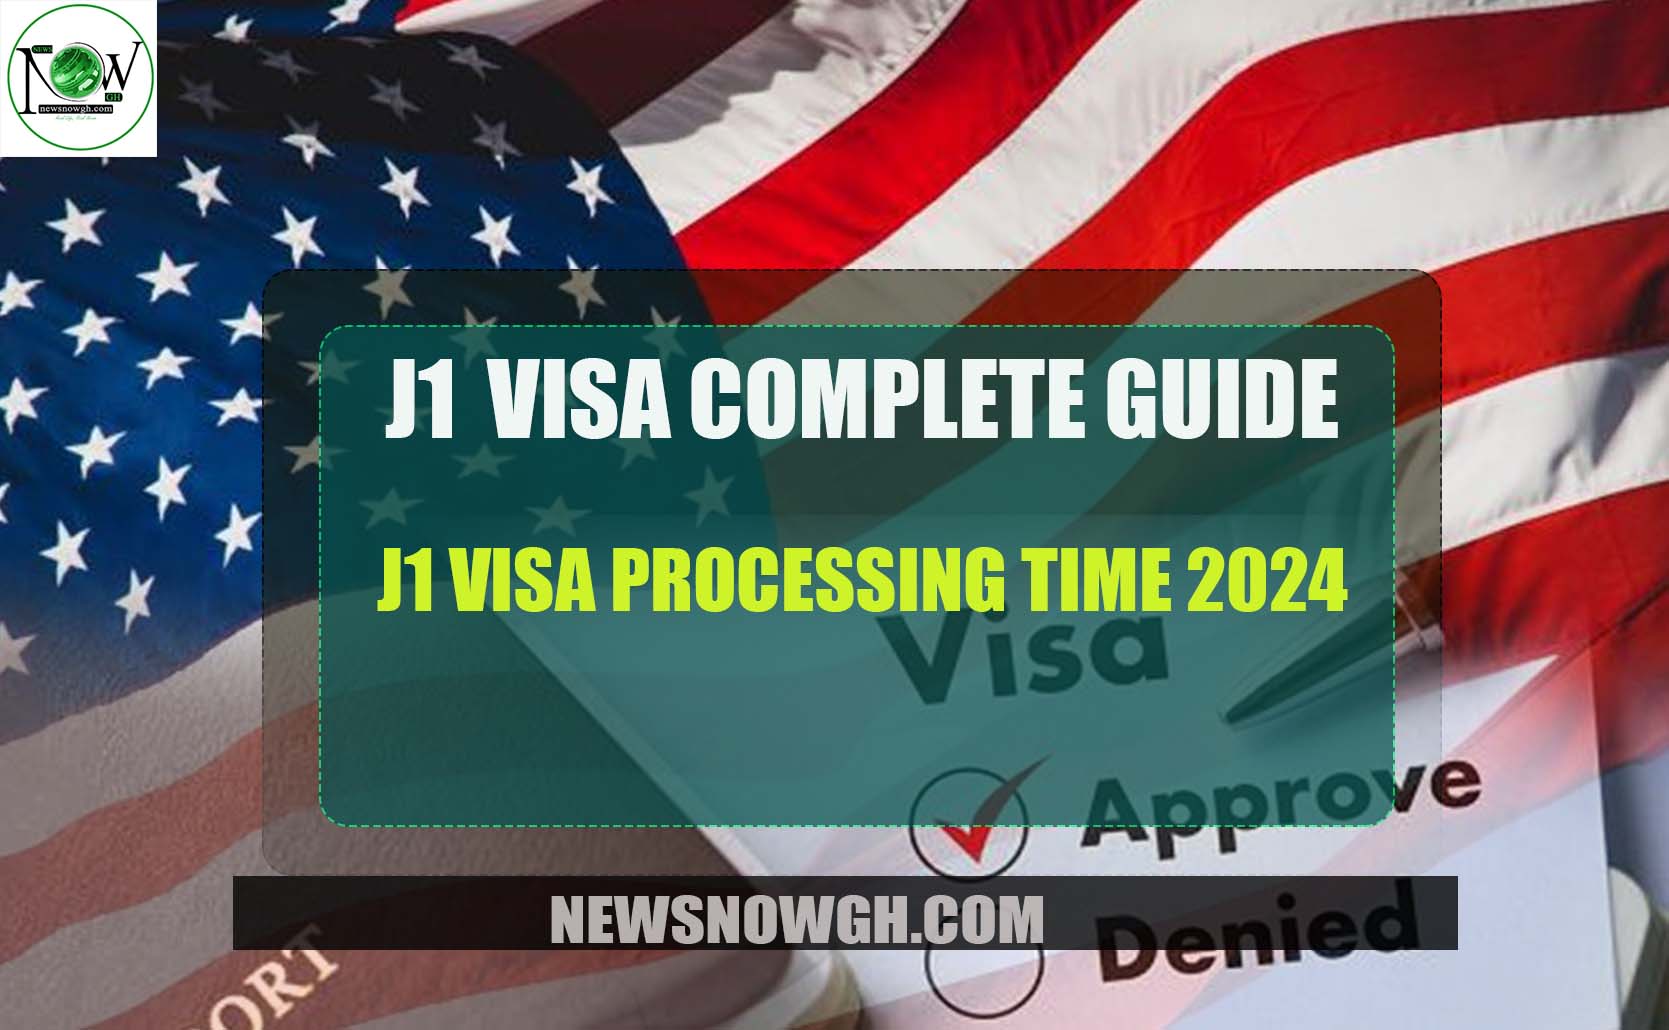 J1 Visa Processing Time 2024 J1 Visa Complete Guide